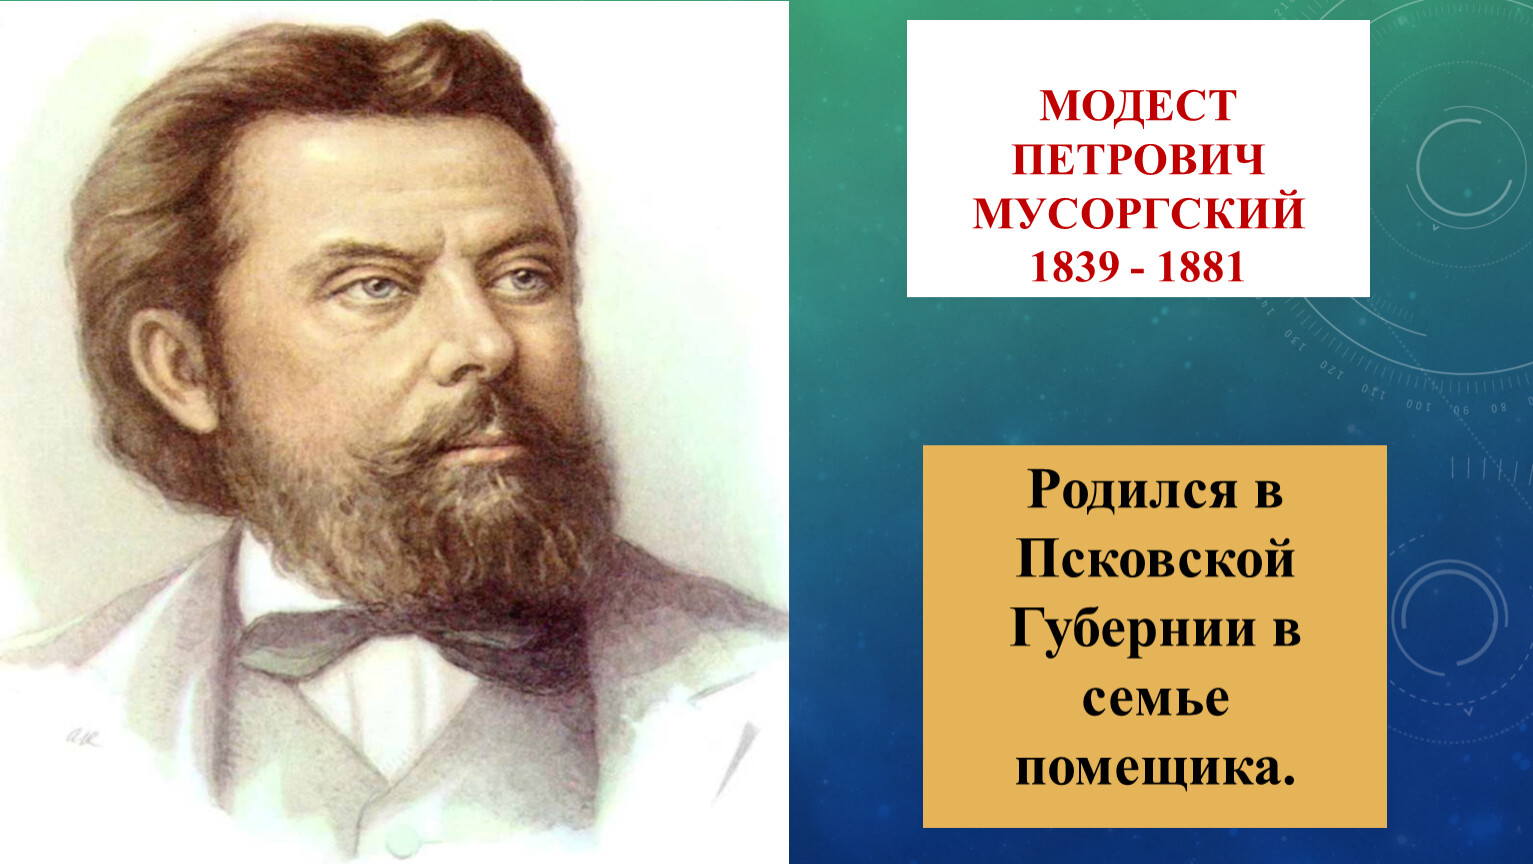 Мусоргский (1839-1881)